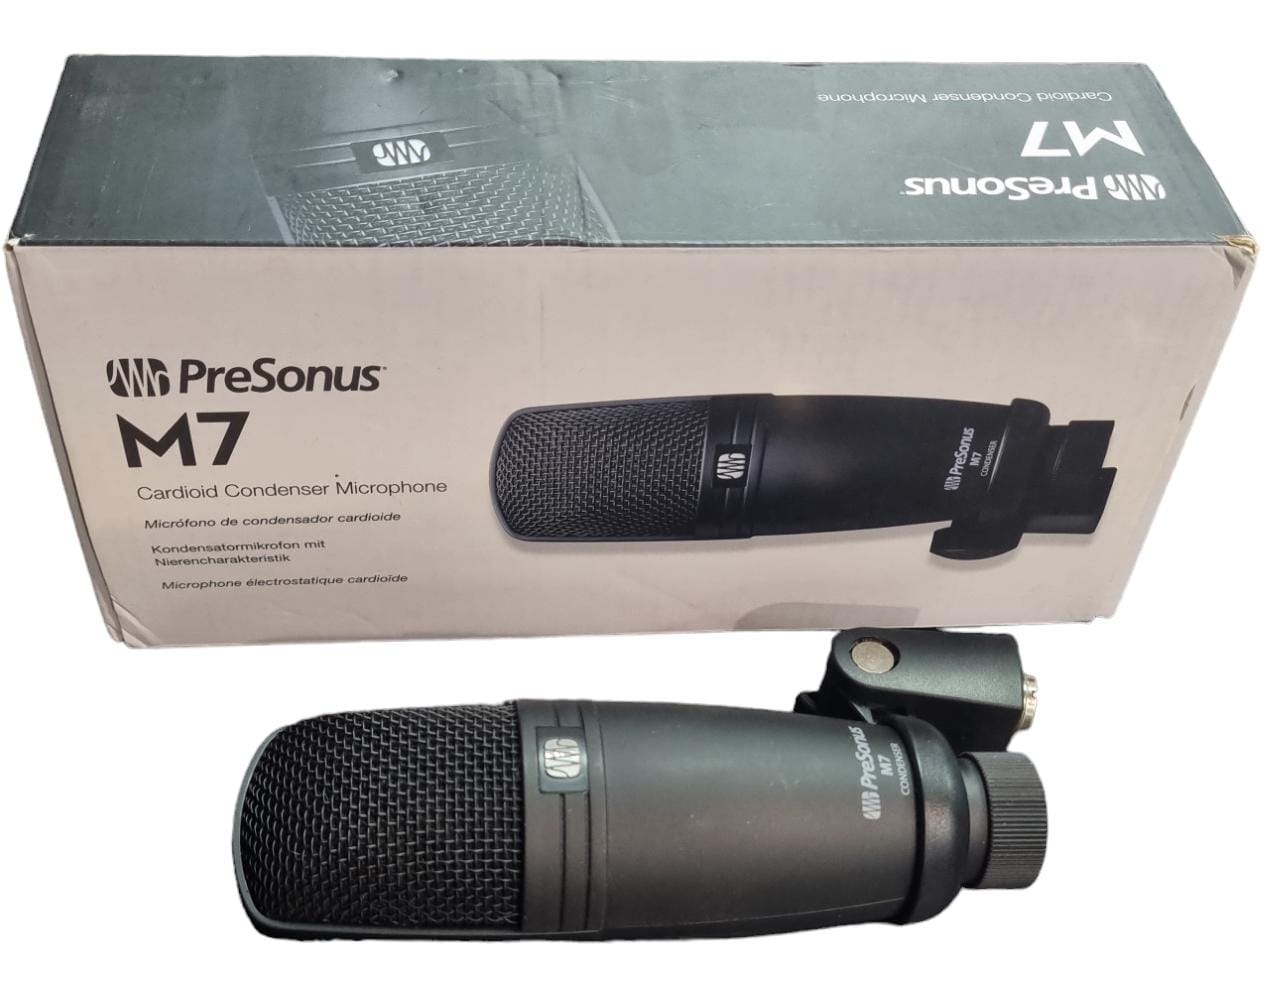 Presonus M7 Cardioid Condenser Microphone - Boxed